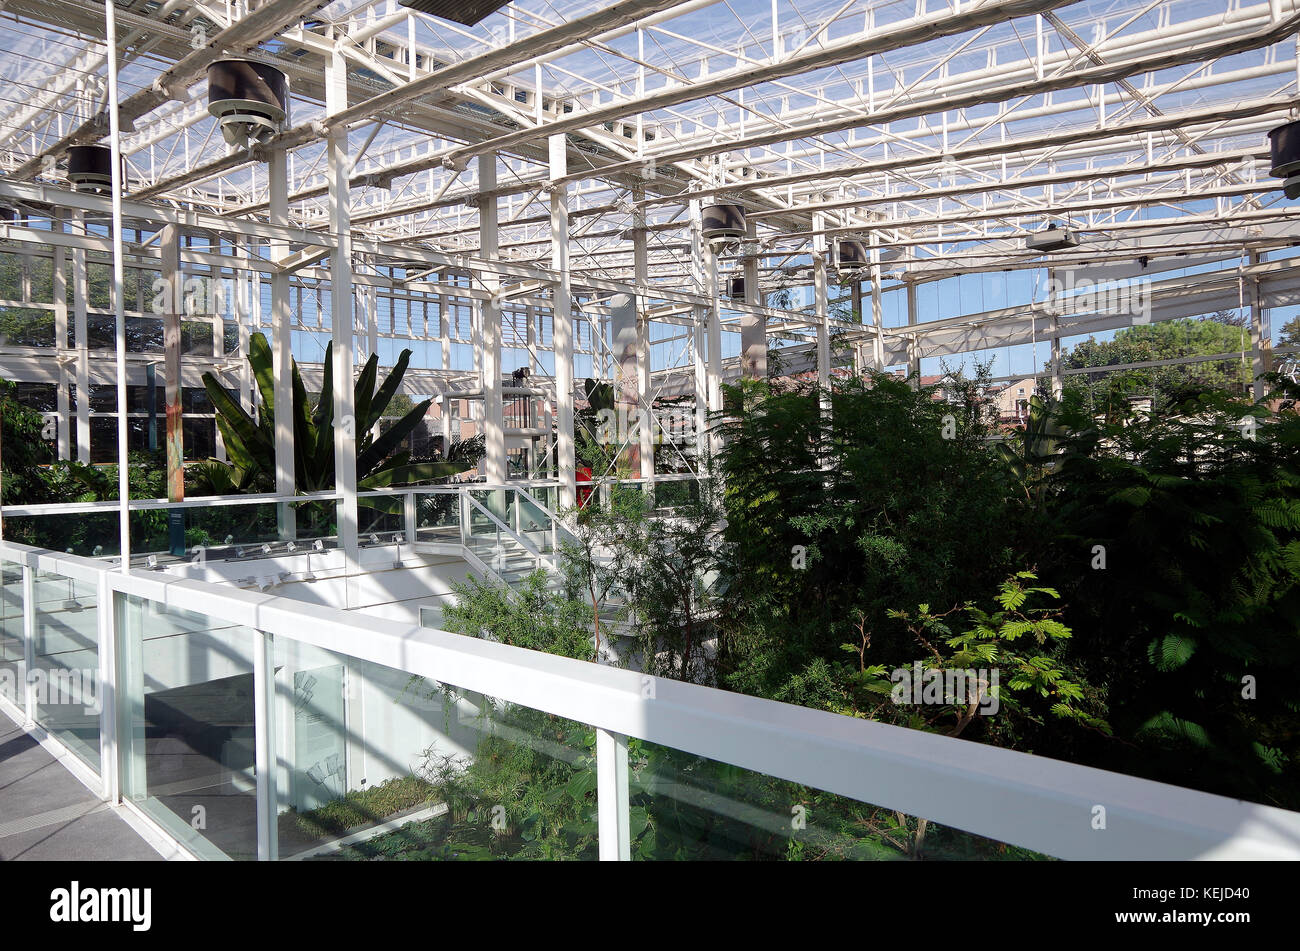 Orto Botanico di Padova, Padua botanischen Garten, der weltweit älteste, in Padu, Italien, Interieur des Sub-tropischen Asien & Afrika Zone Stockfoto